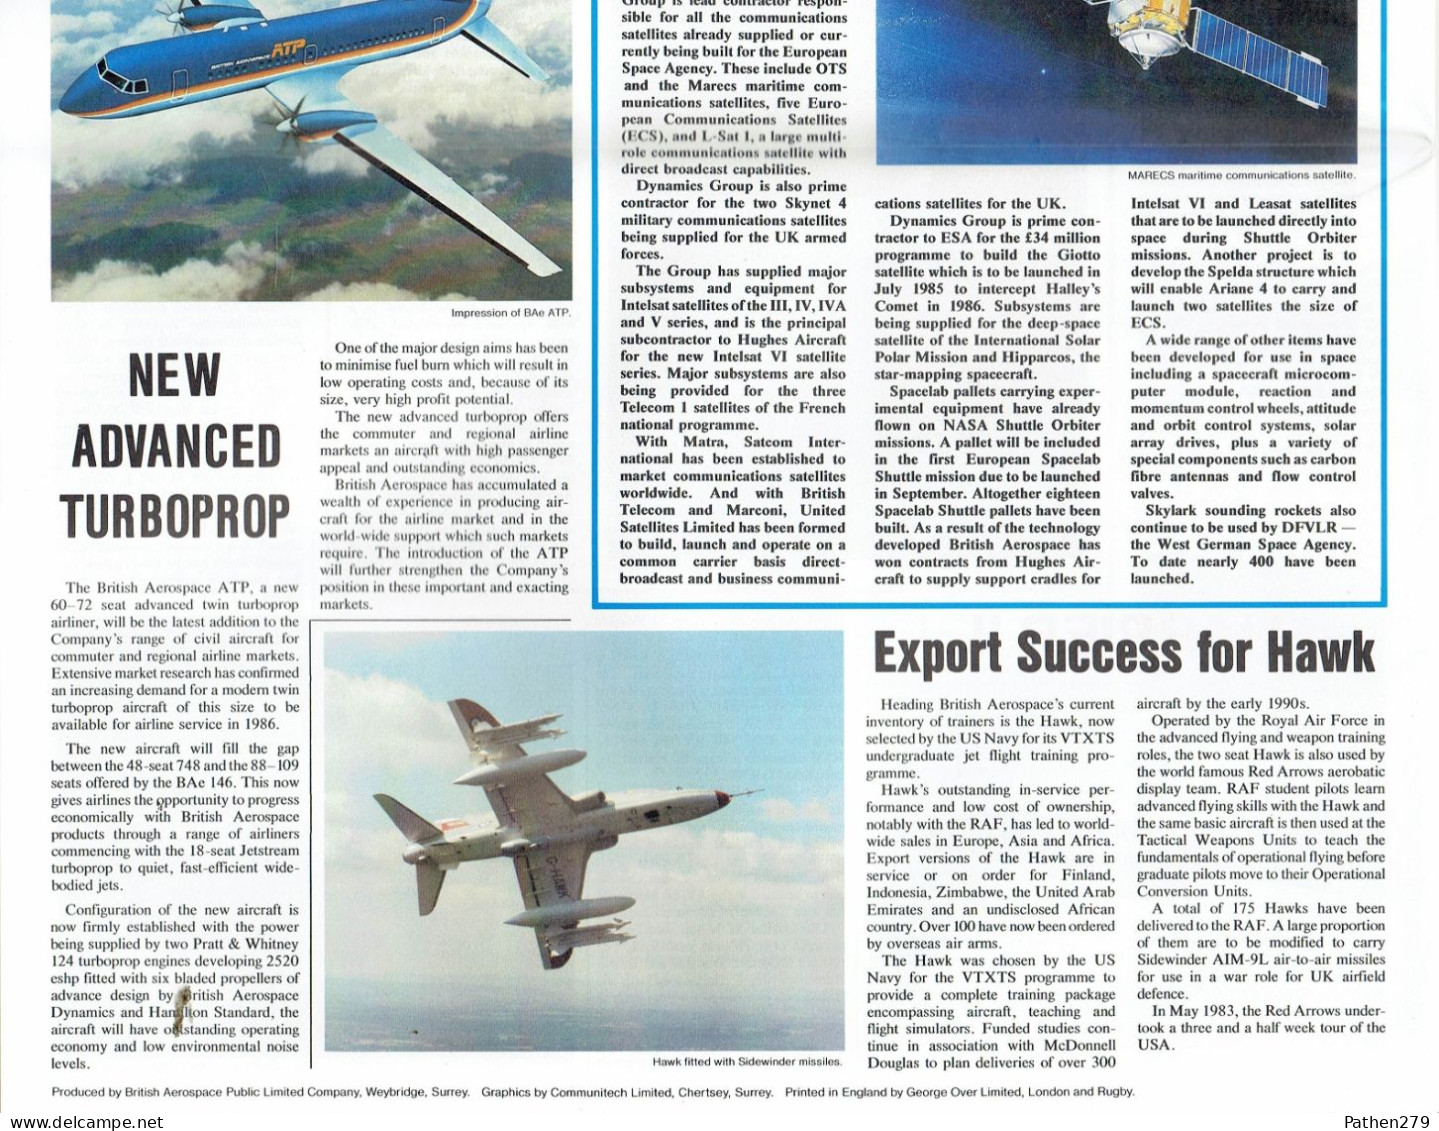 Journal British Aerospace Bulletin Pour Le Salon Aéronautique Du Bourget Juin 1983 - Verkehr